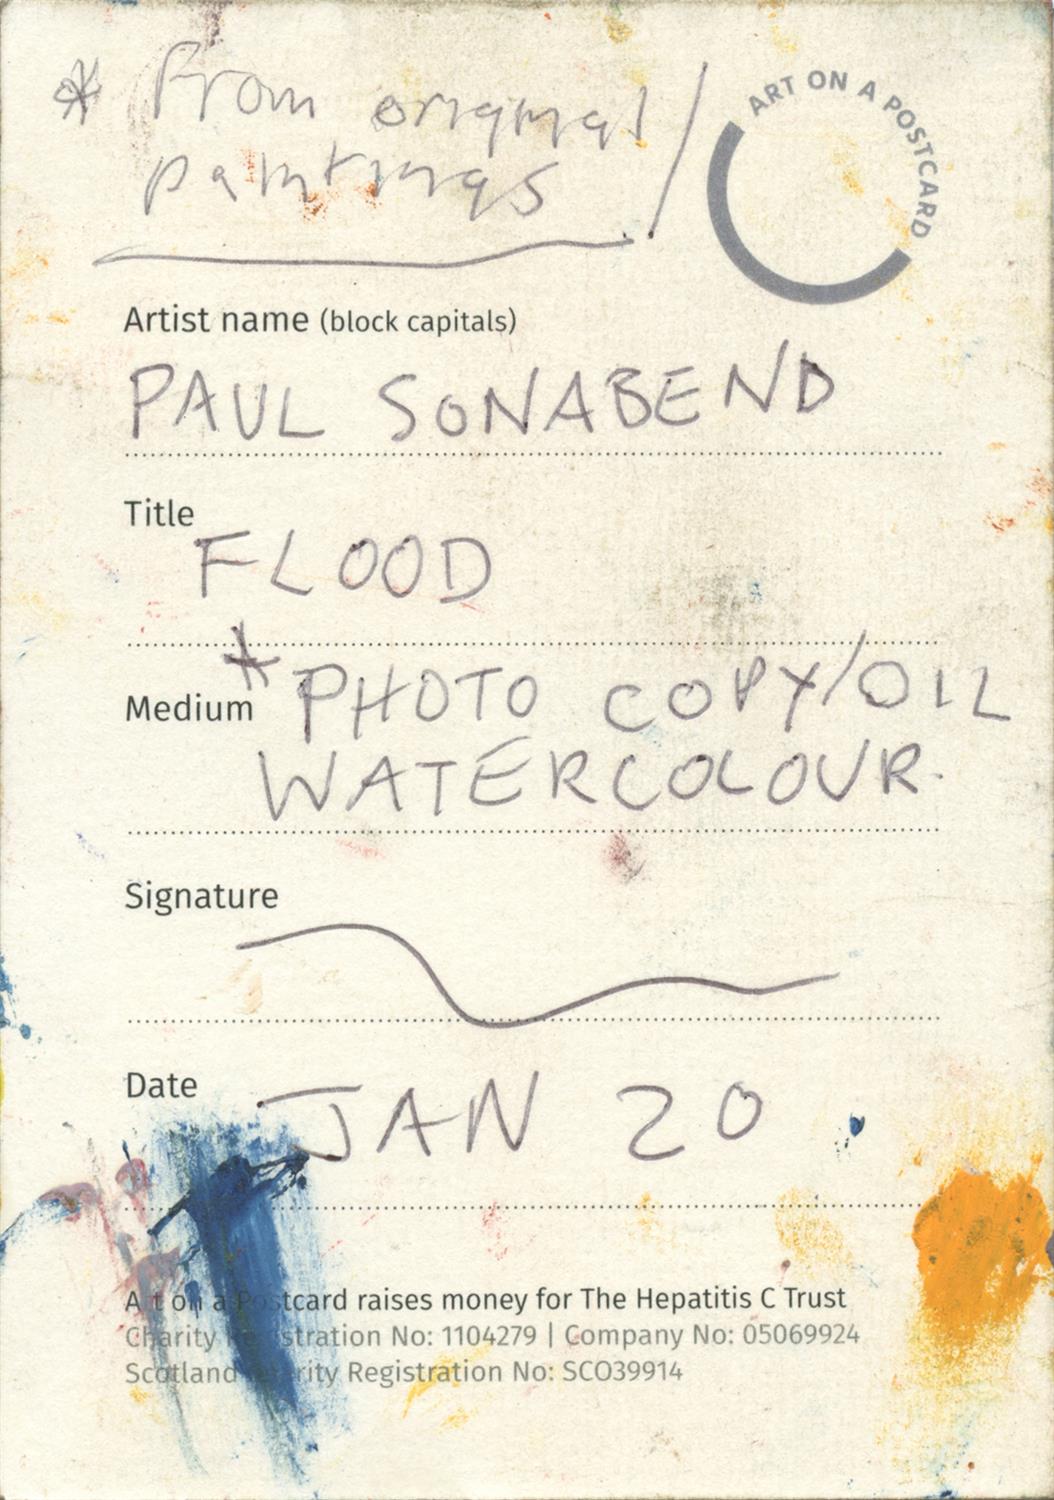 Paul Sonabend, Flood, 2020 - Image 3 of 3